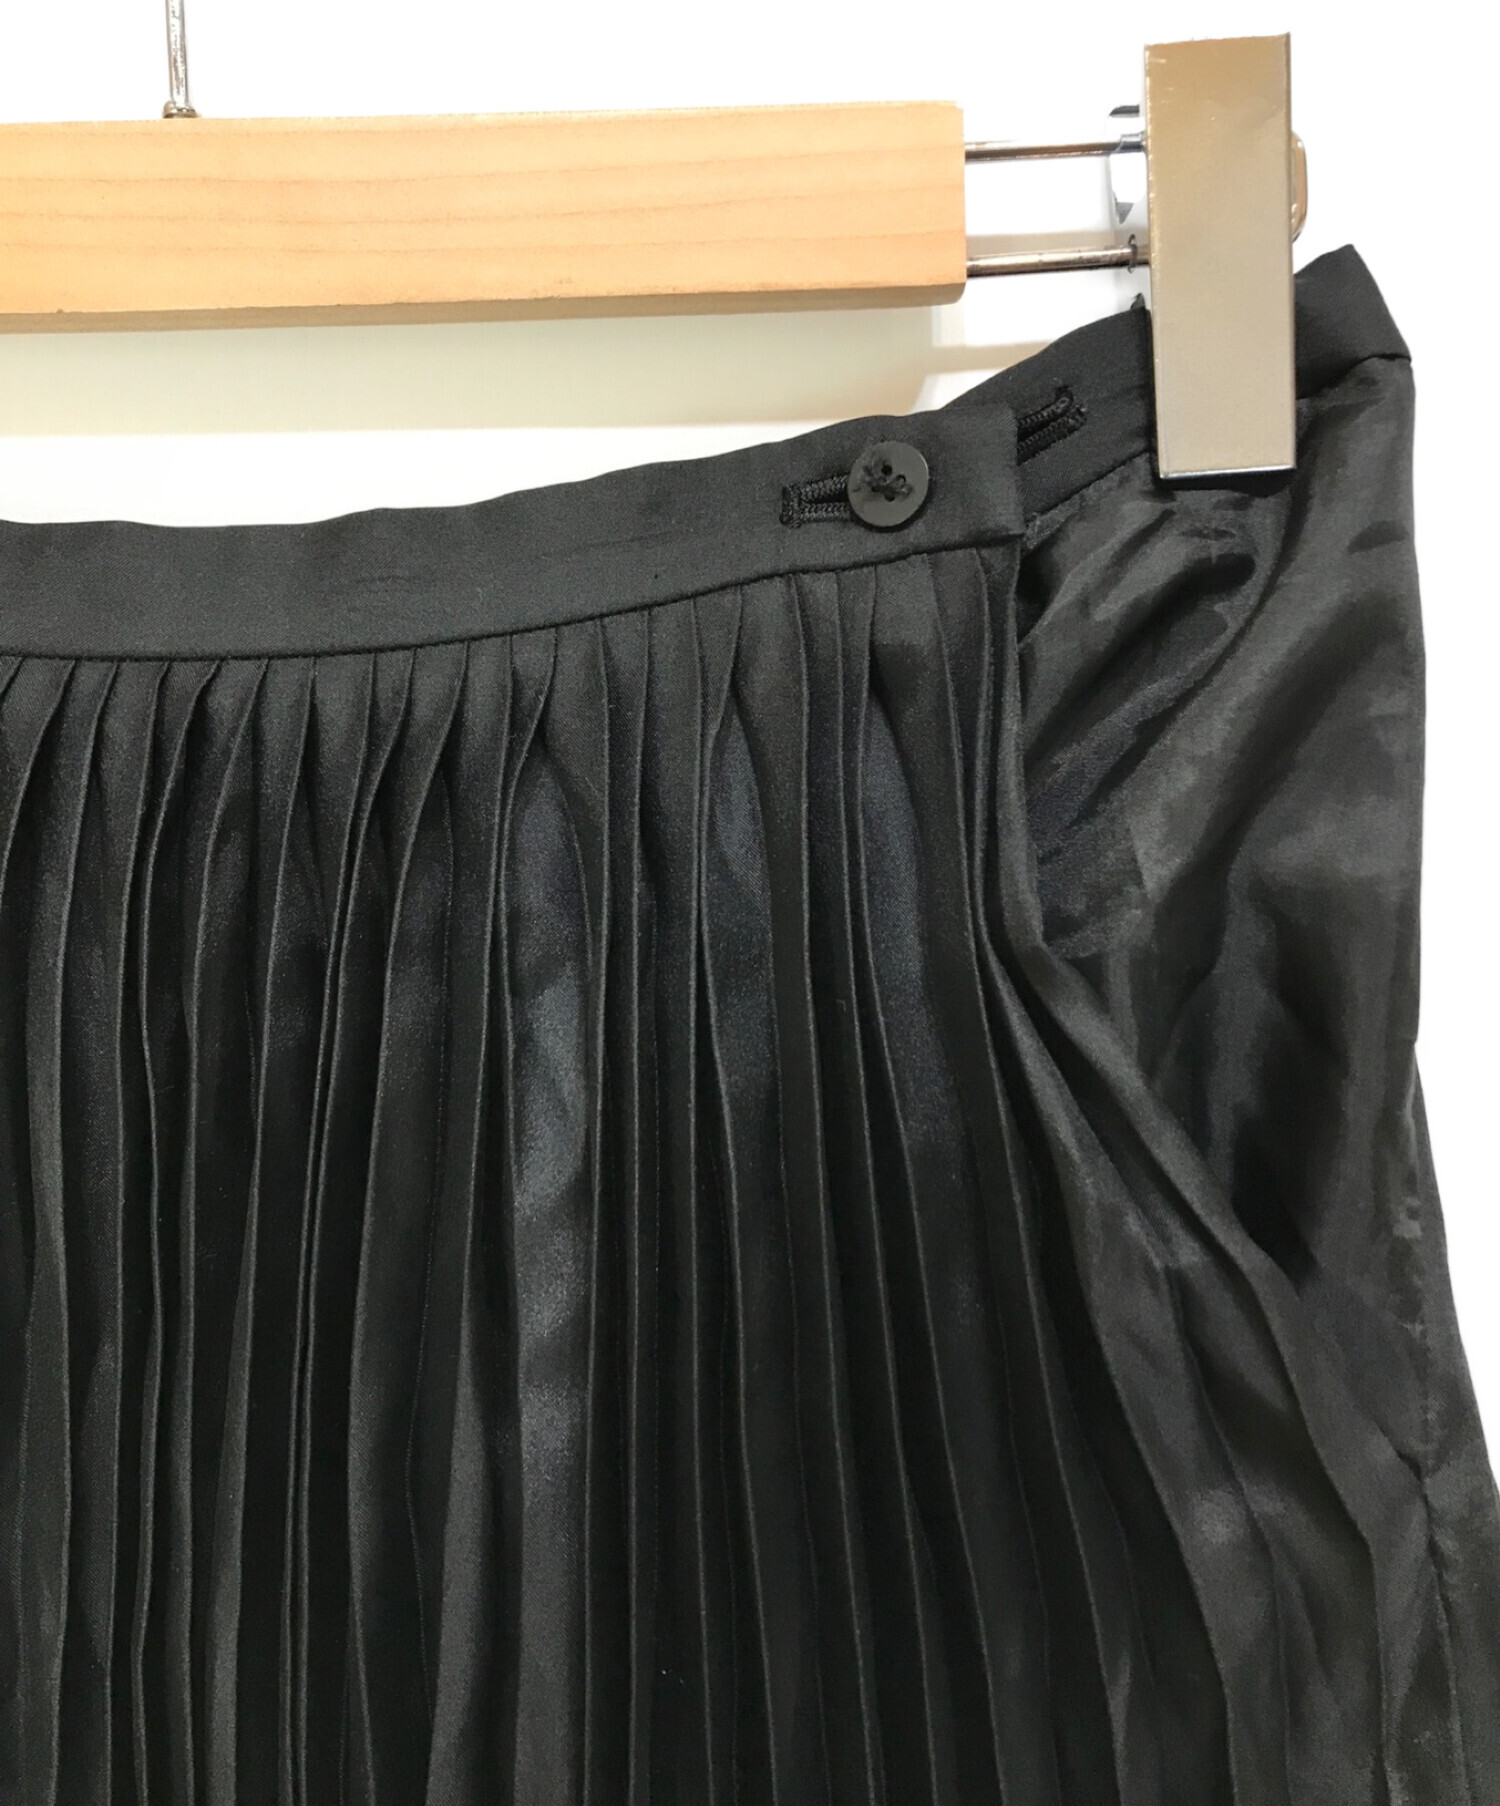 ISSEY MIYAKE (イッセイミヤケ) プリーツスカート ブラック サイズ:M